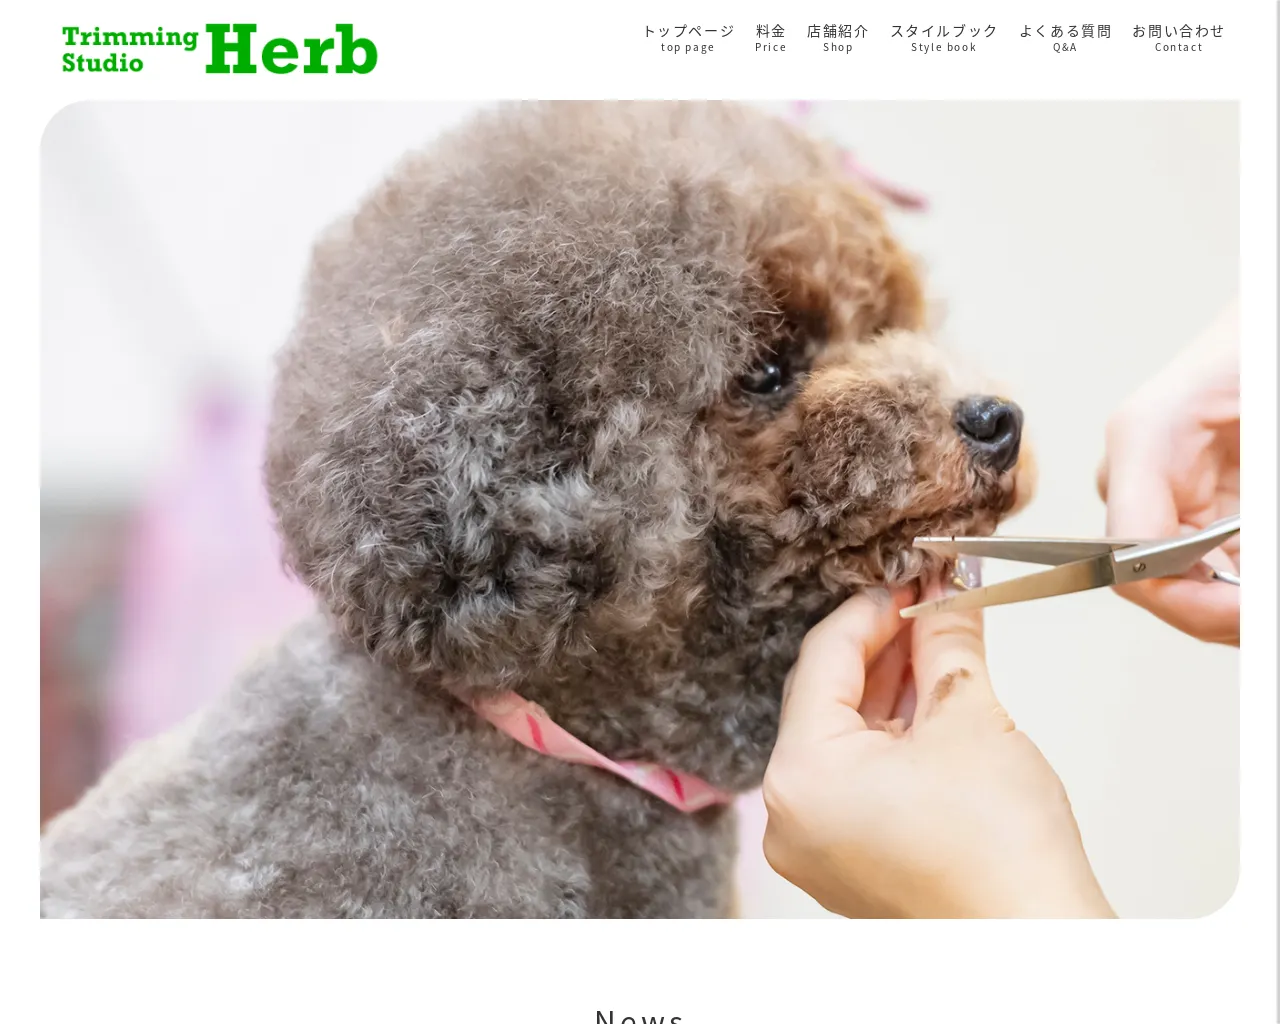 Trimming Studio Herb site